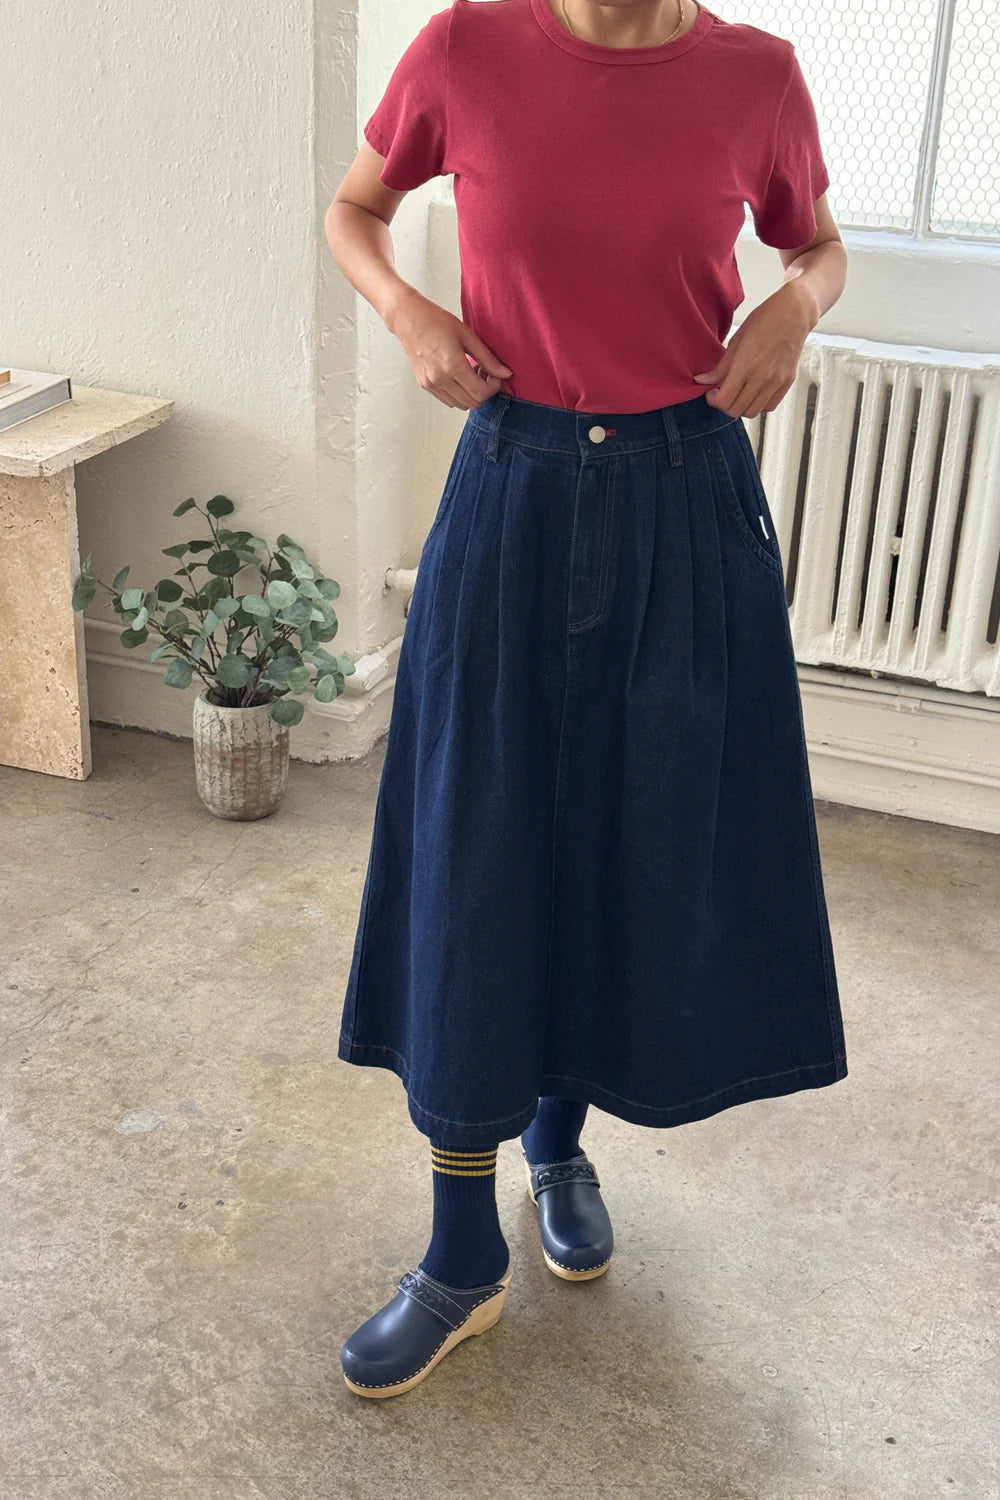 Long Farm Girl Skirt - Raw Denim